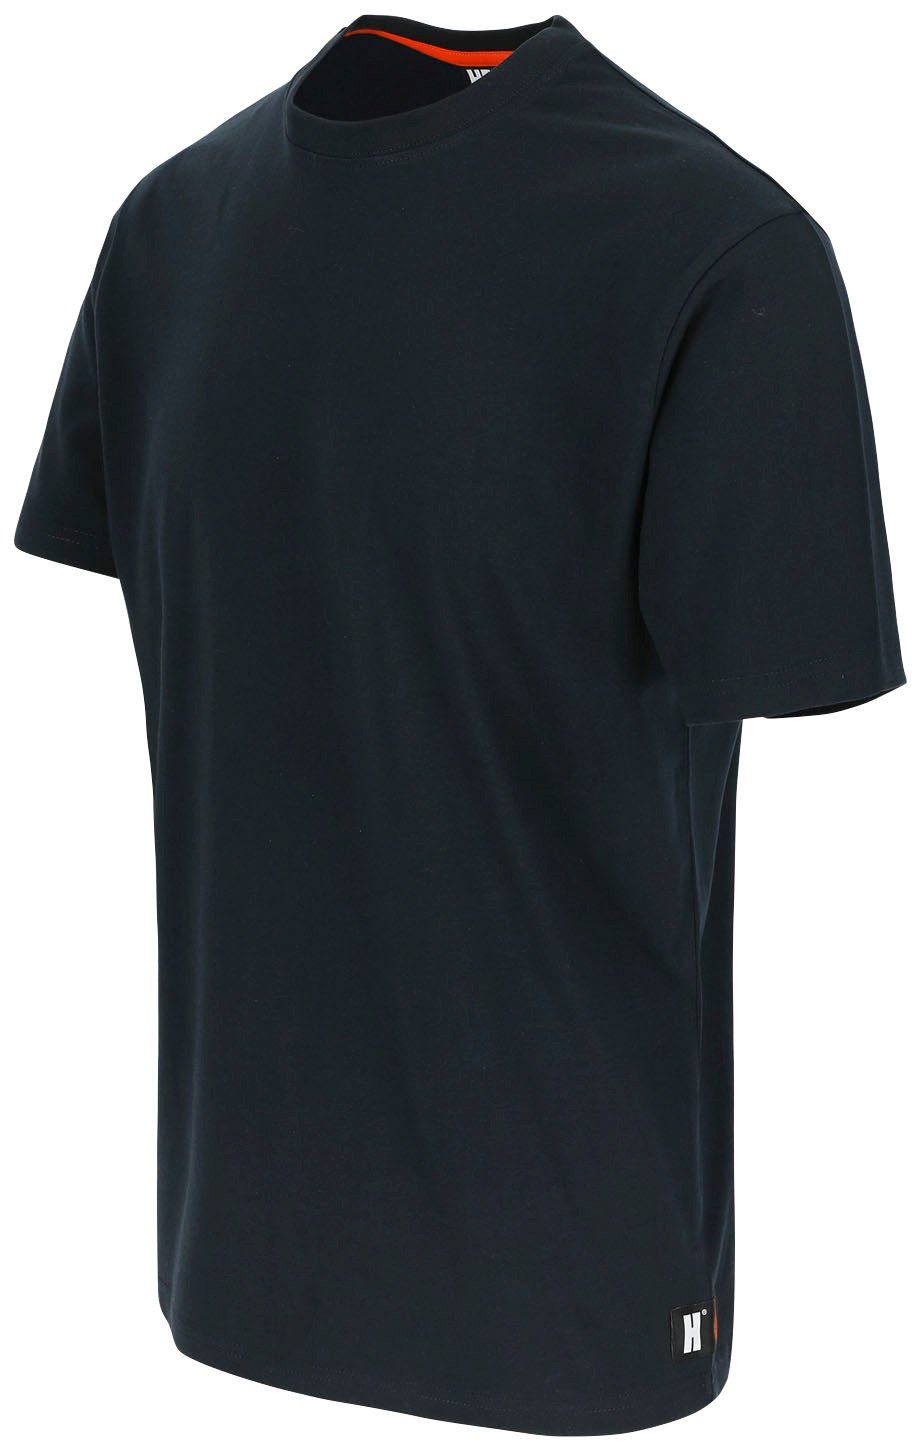 Ärmel Ärmel, T-Shirt kurze Rippstrickkragen Rundhalsausschnitt, Herock®-Aufdruck, kurze Callius blau Herock T-Shirt